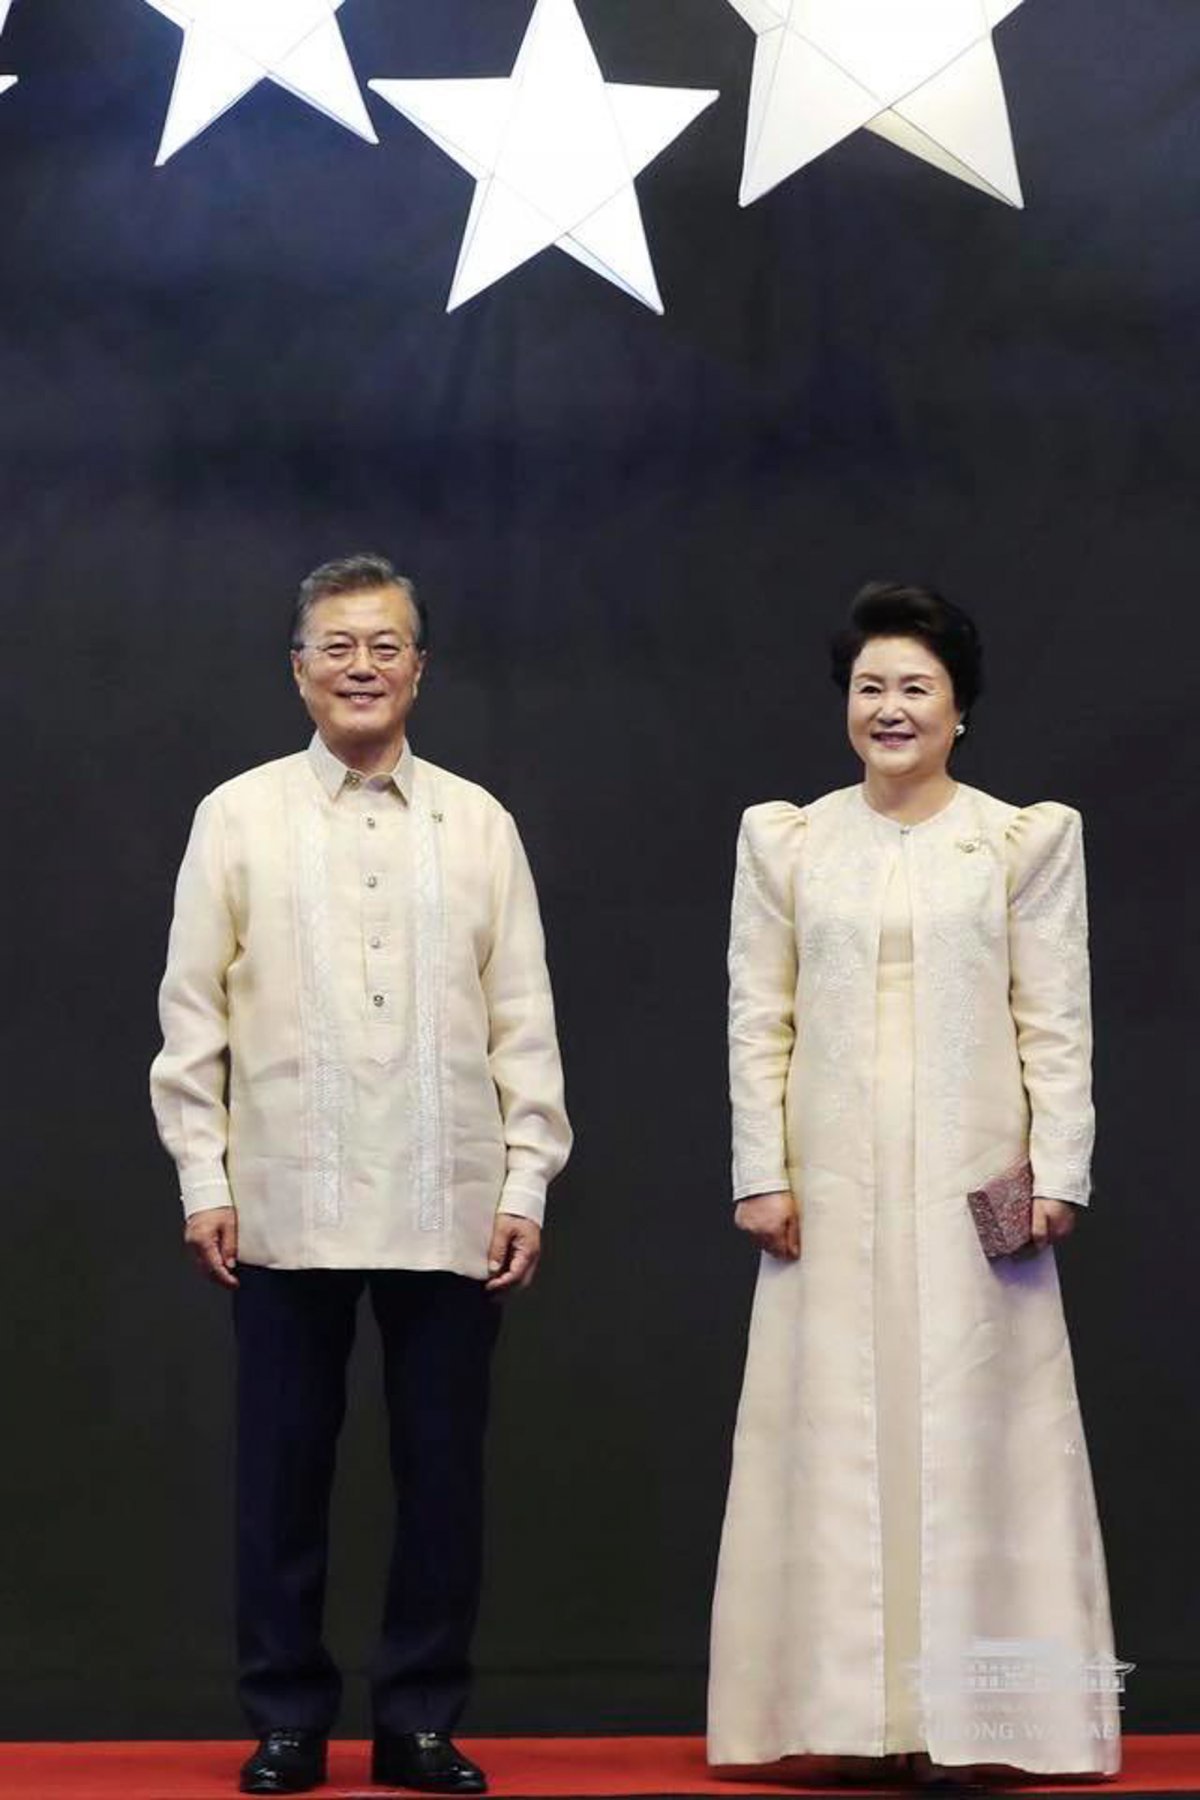 2017년 11월 13일 문재인 대통령과 김정숙 여사가 필리핀 마닐라 몰오브아시아 SMX 컨벤션 센터에서 열린 ‘아세안(ASEAN 동남아시아국가연합) 50주년 기념 갈라만찬’에 참석해 기념촬영을 하고 있다. 청와대 제공